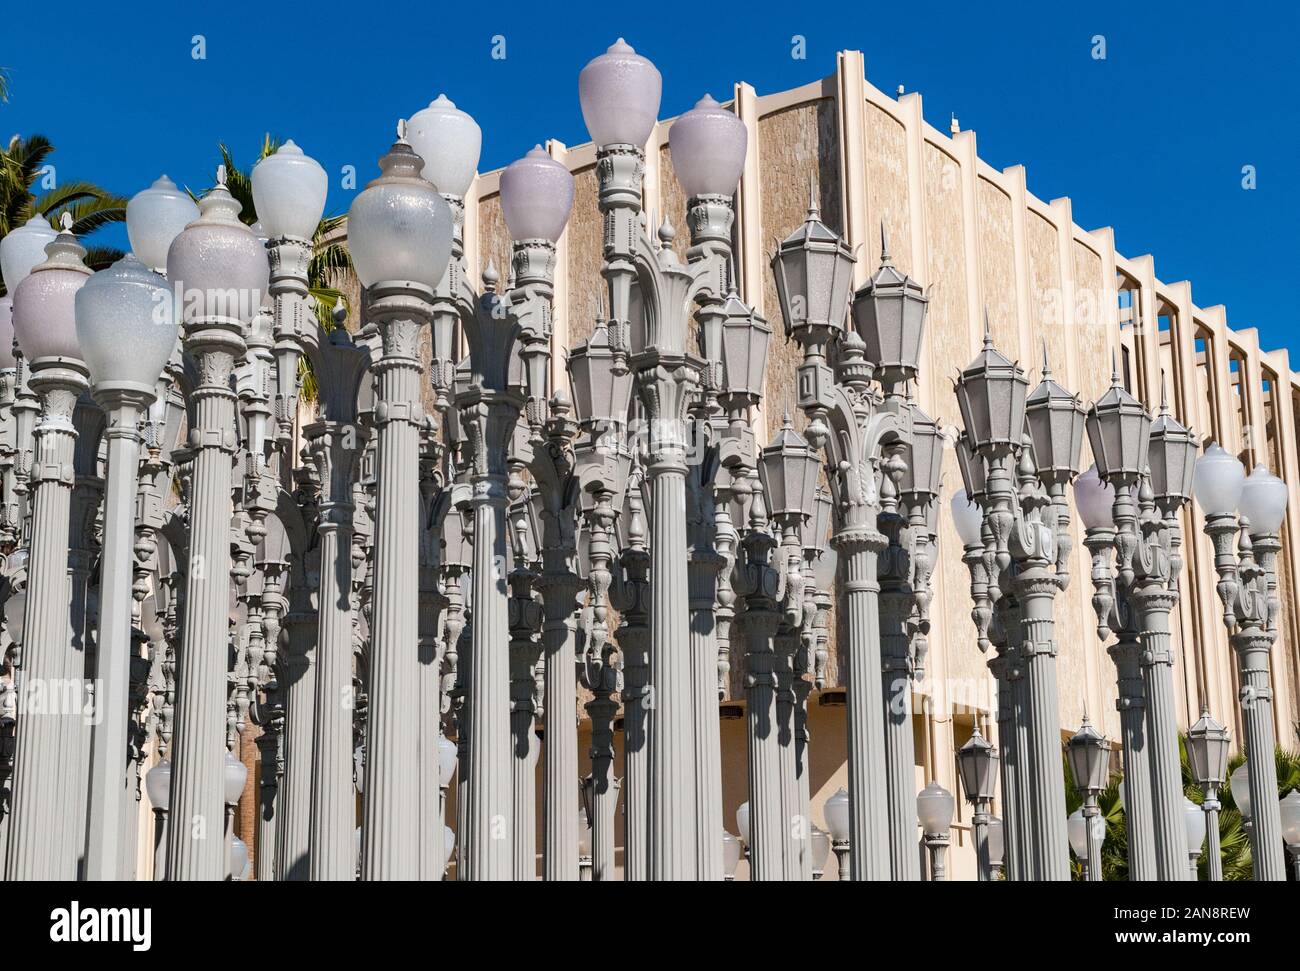 Los Angeles, Calofornia ha - 13 Giugno 2018: Luce urbana assemblage scultura dell'artista Chris Burden presso il Los Angeles County Museum of Art Foto Stock